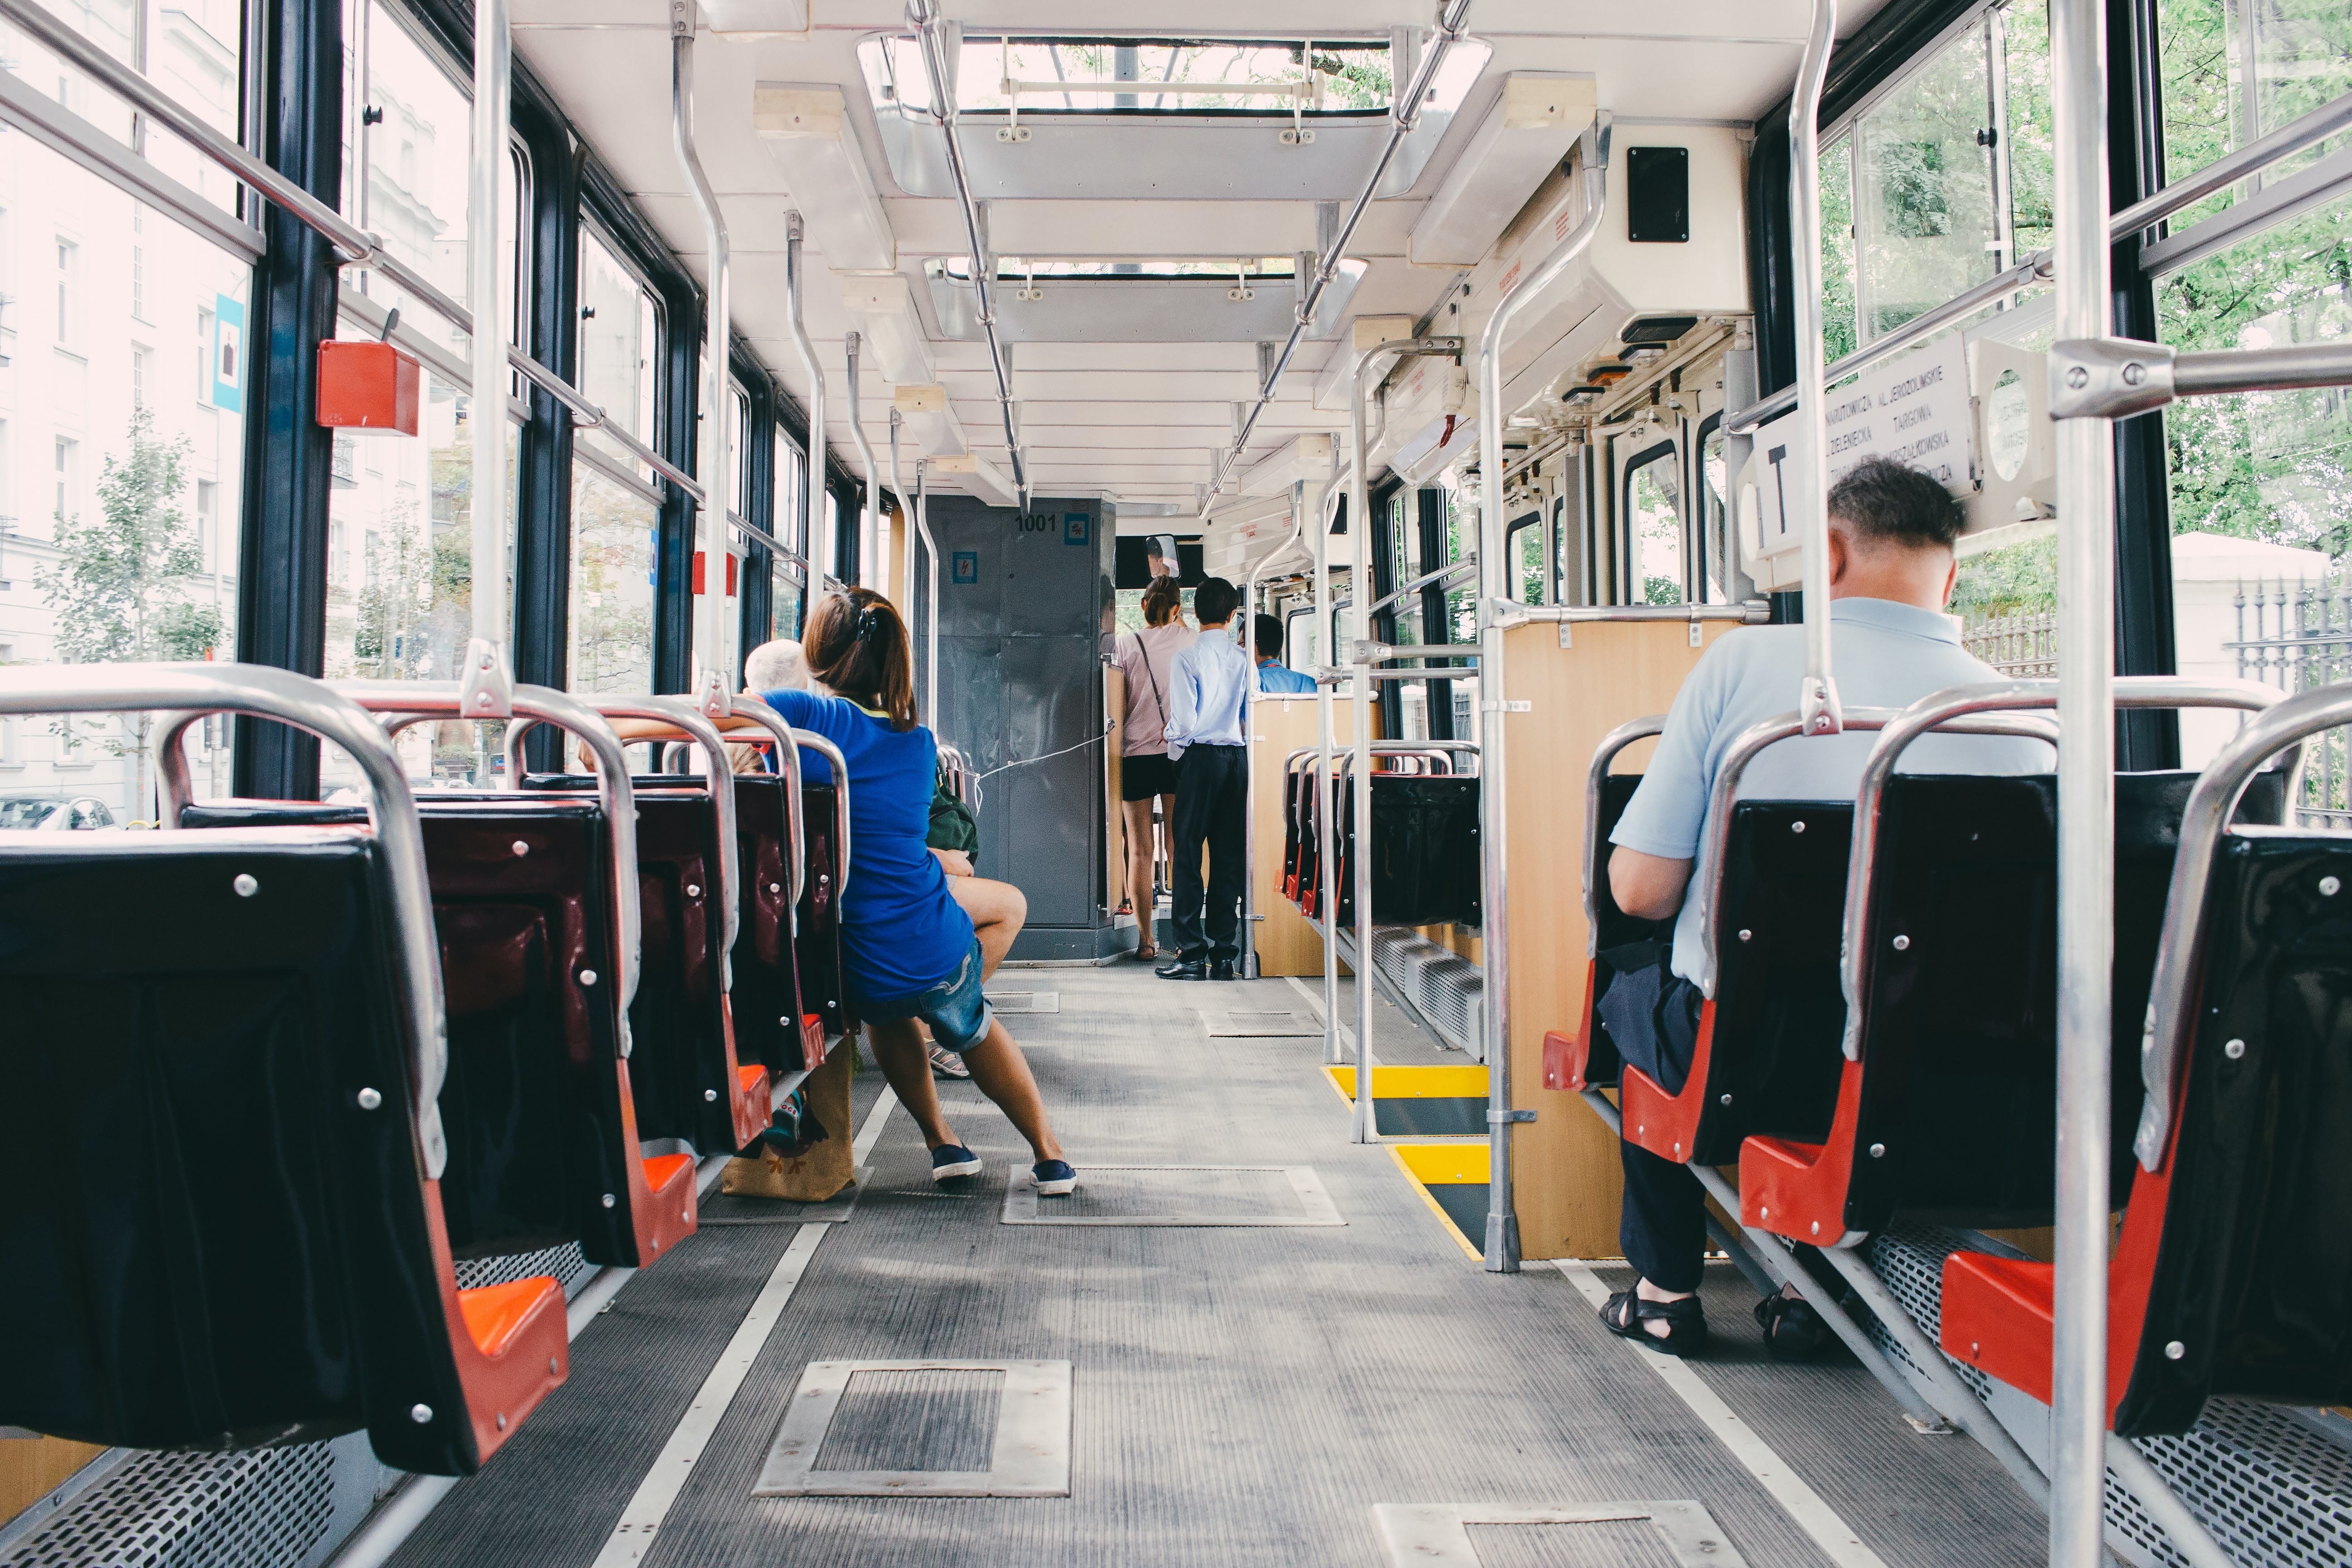 Польський водій автобуса захистив школярку від нав'язливого пасажира - Закордон